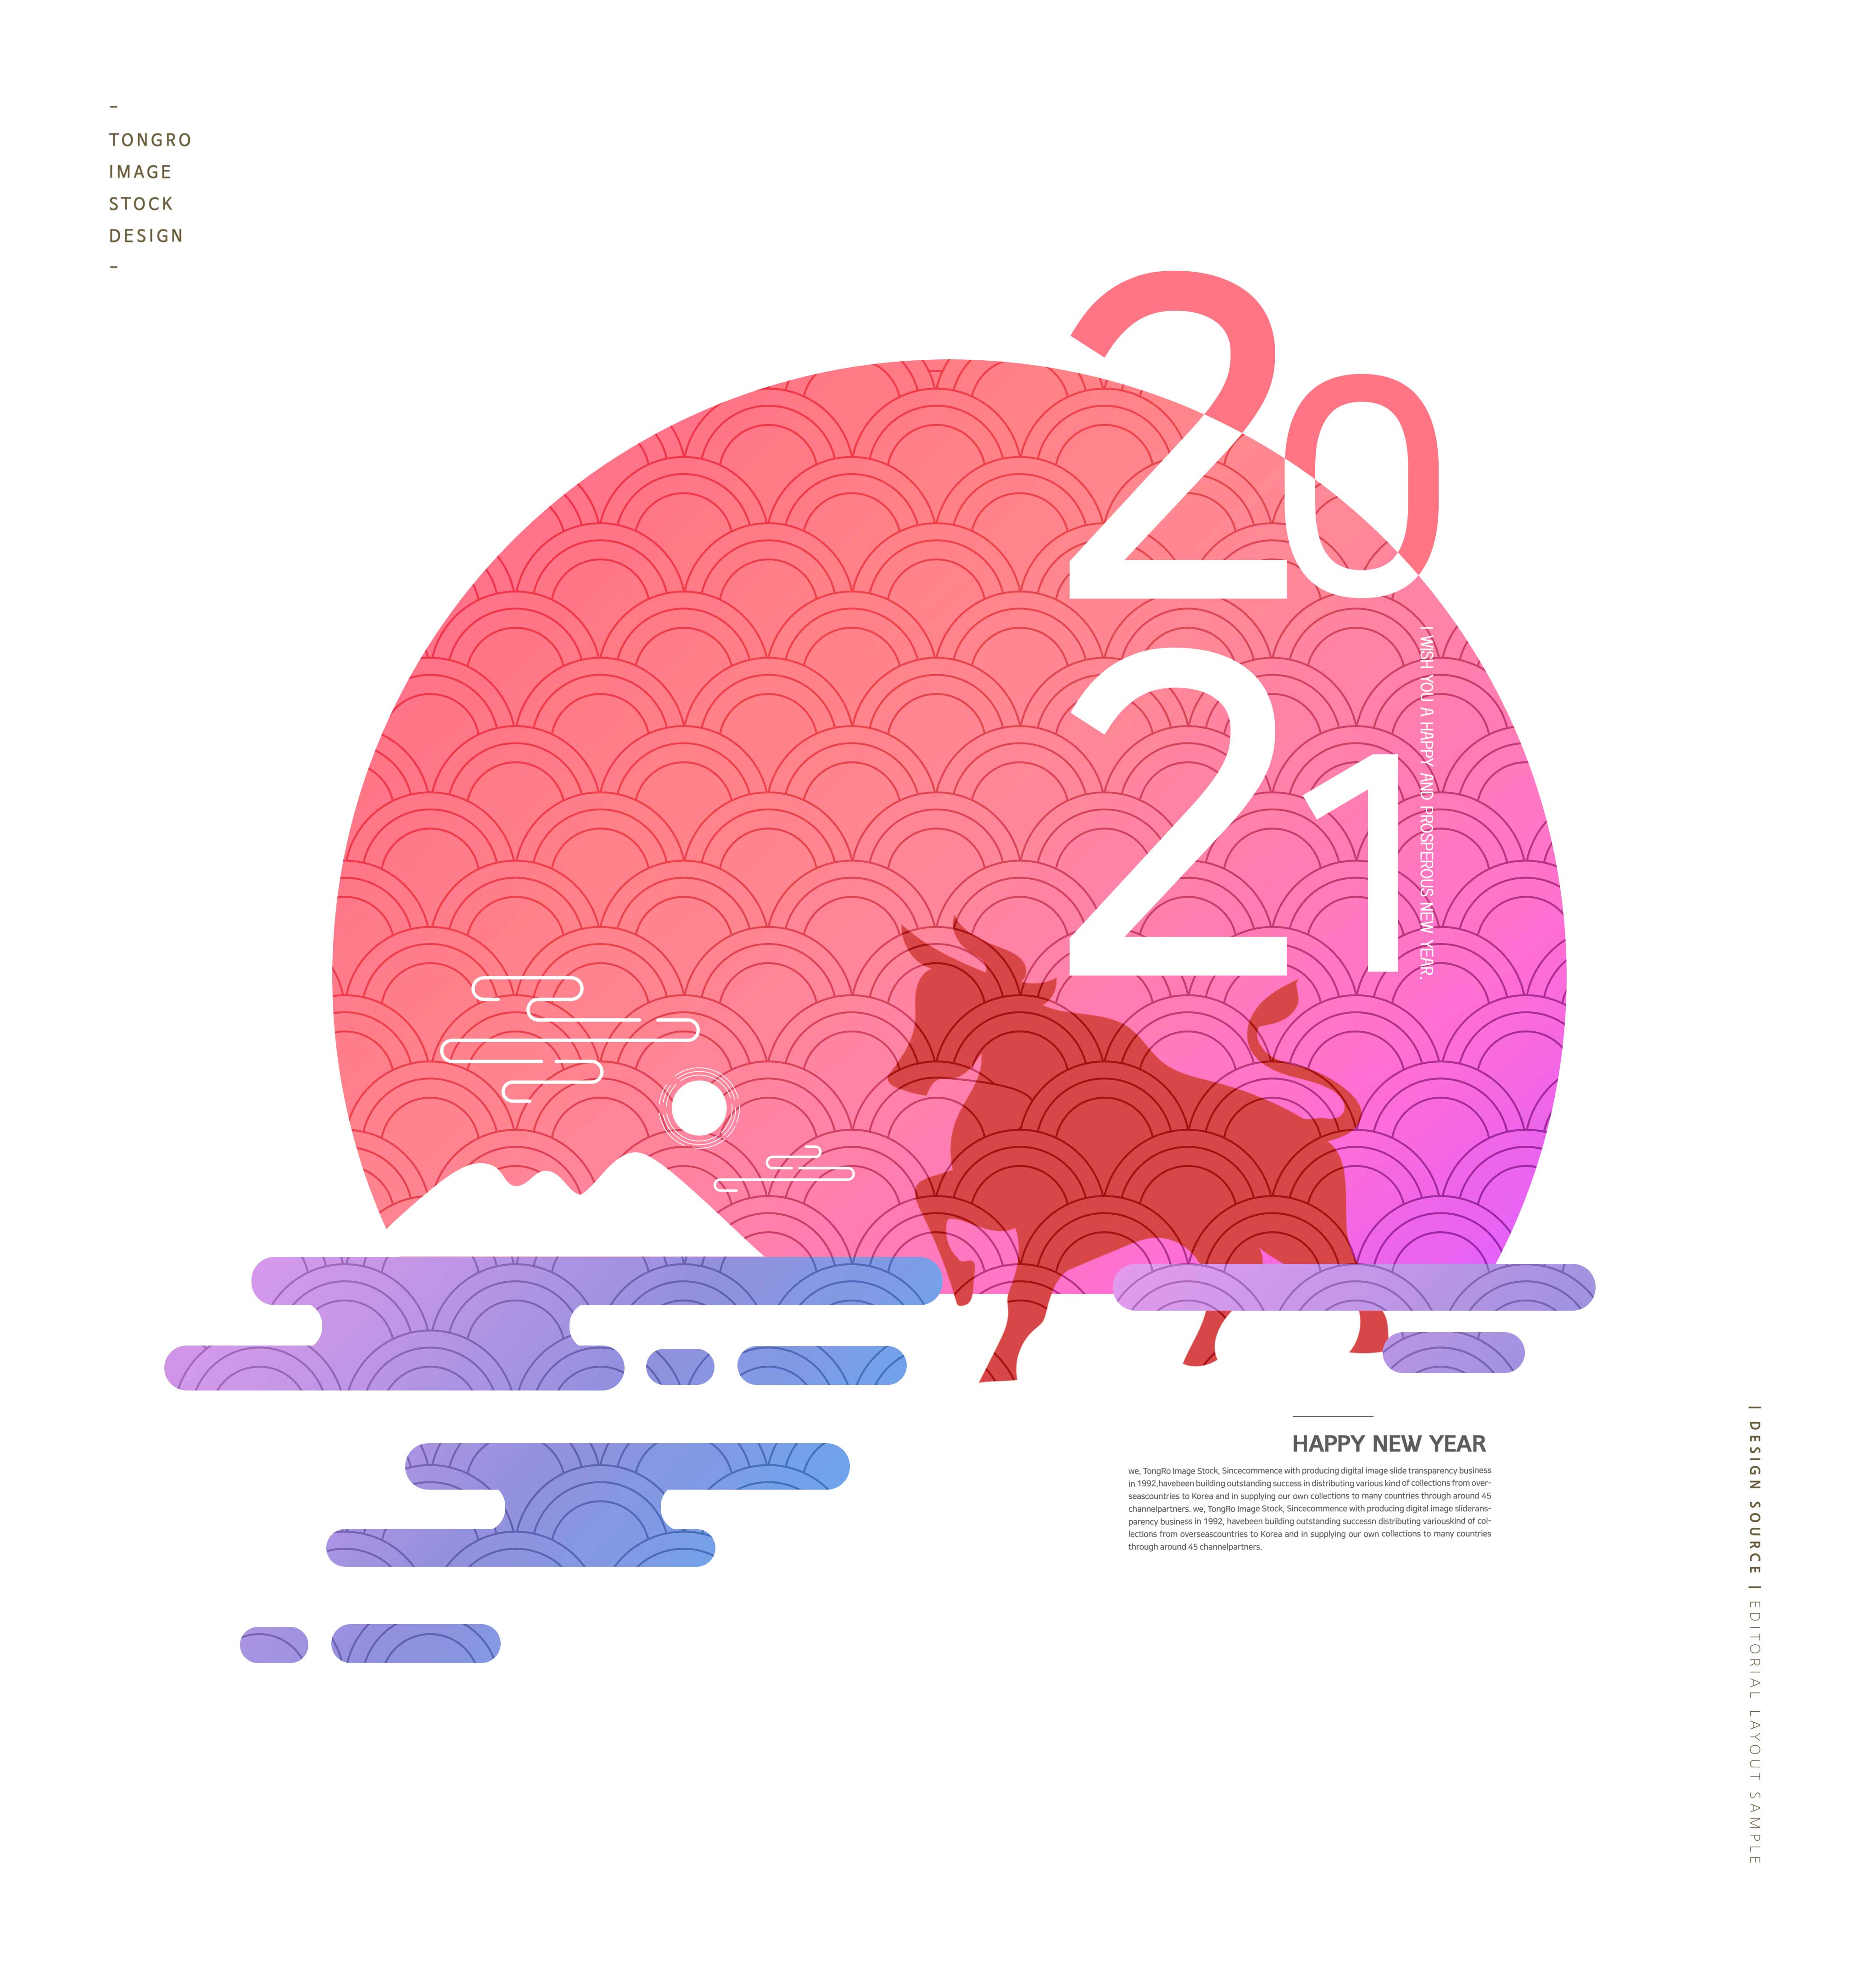 新年快乐主题创意2021牛年海报设计模板合集v2设计素材模板